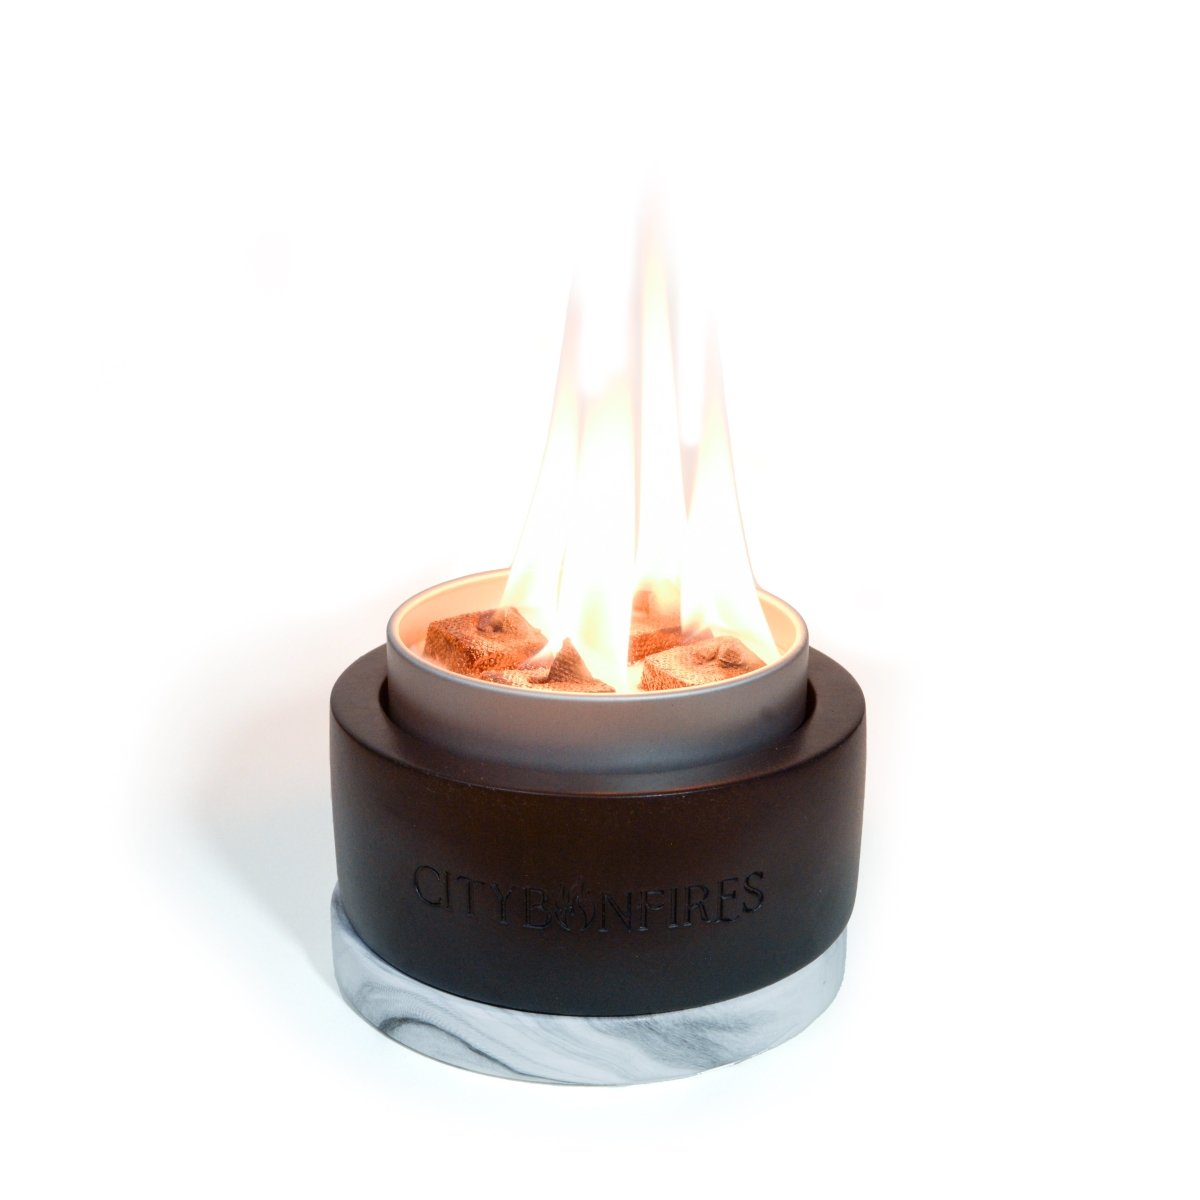 Tabletop Fire Bowl + 1 City Bonfire Portable Fire Pit